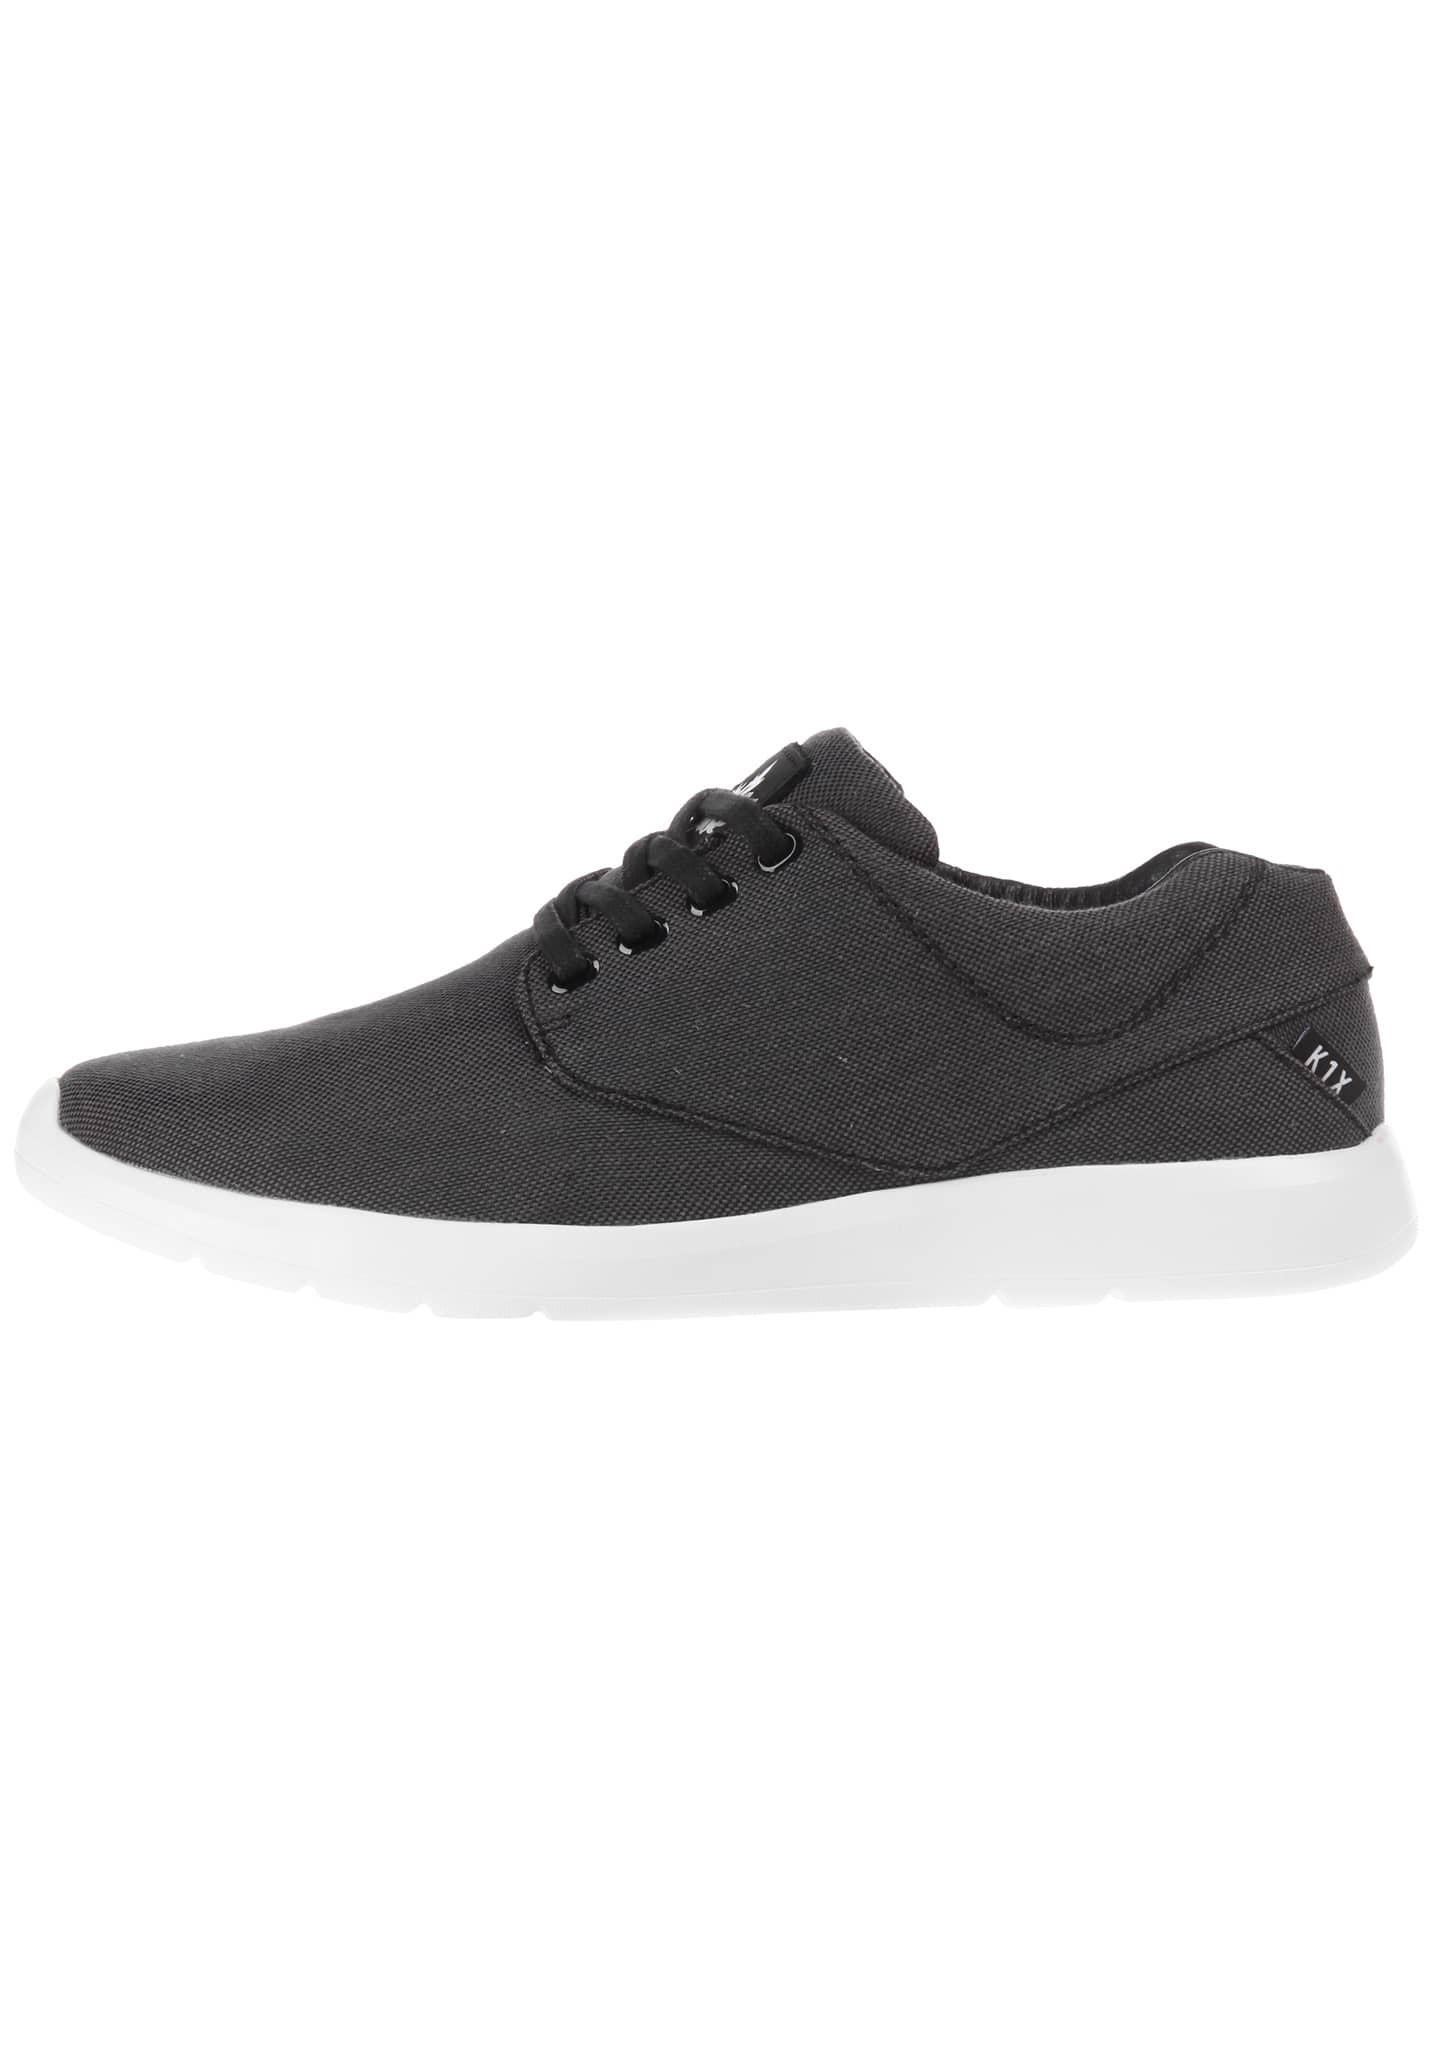 K1X Dressup Lightweight Sneaker schwarz / schwarz / weiß 44,5